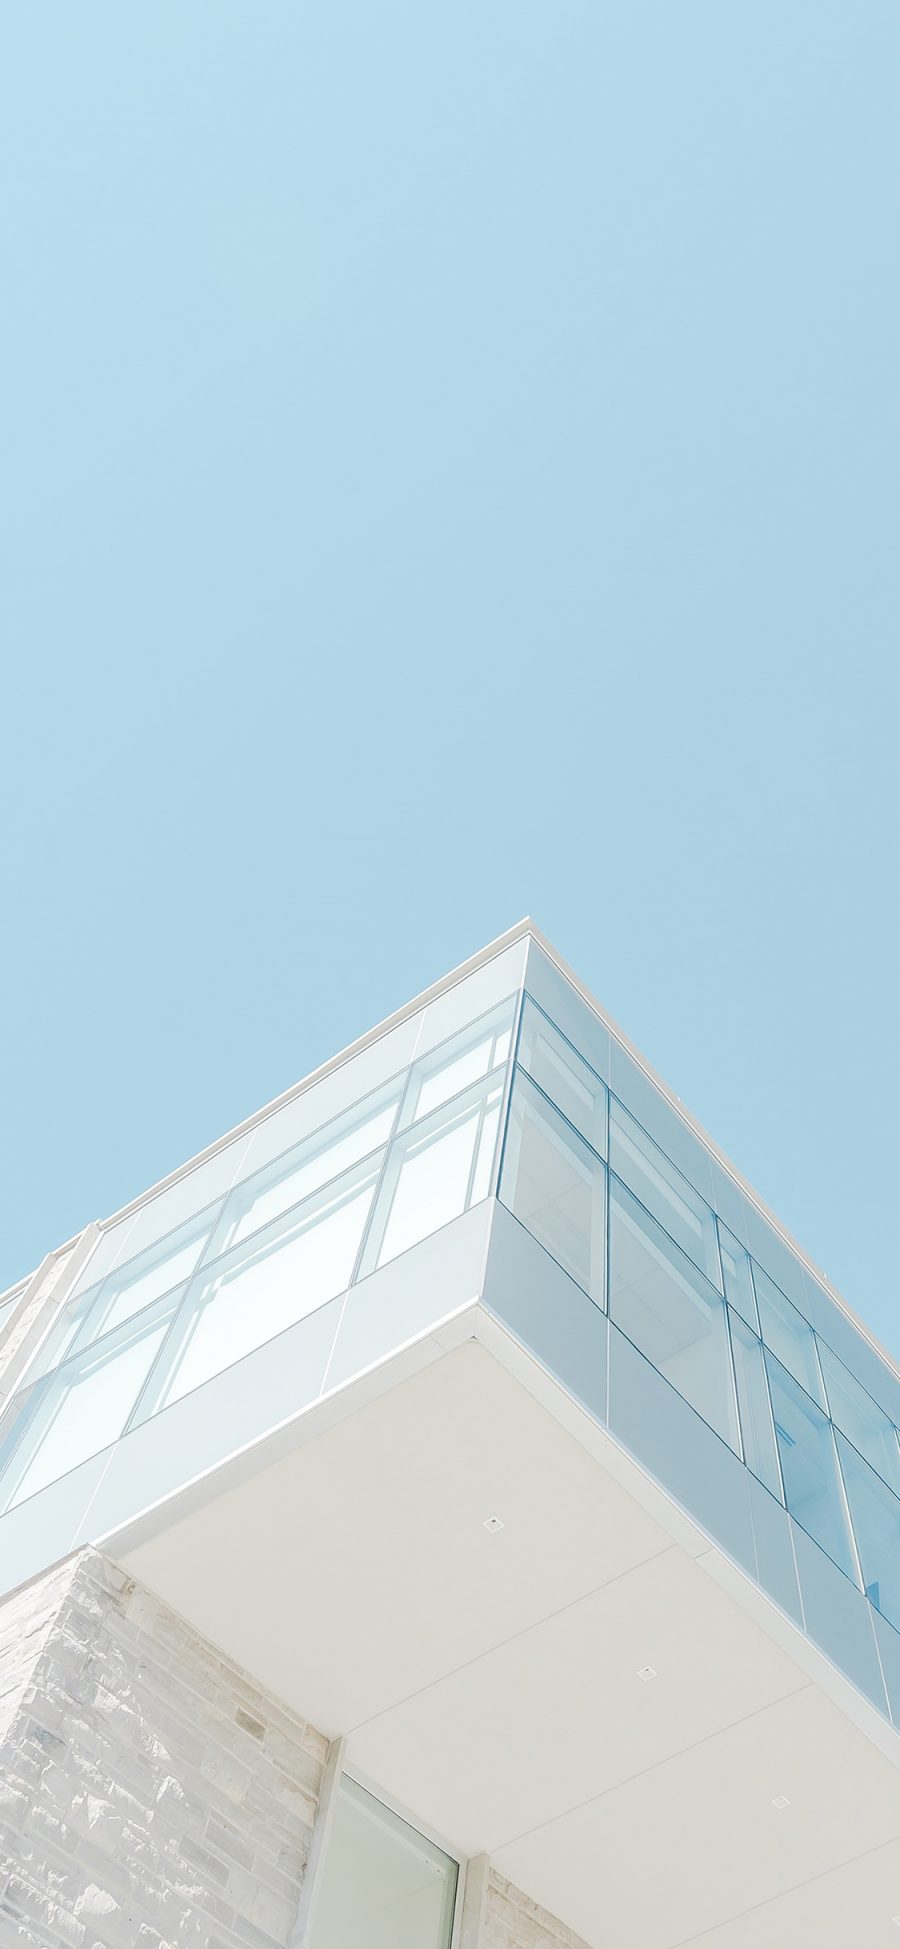 [2436×1125]建筑 楼房 简约 蓝白 小清新 唯美 苹果手机壁纸图片